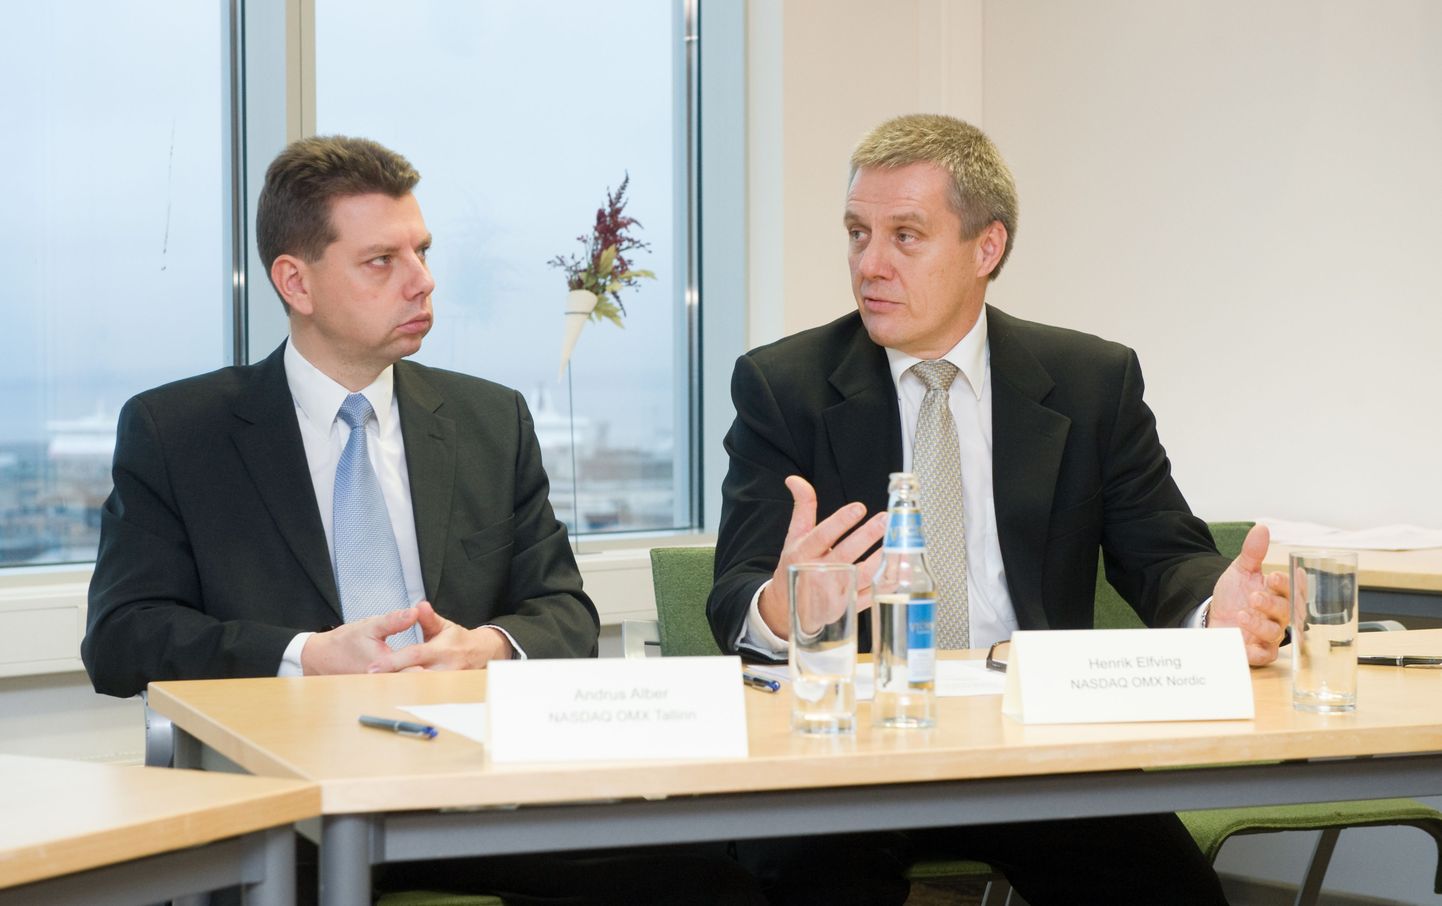 Täna sõlmis NASDAQ OMX lepingu, millega omandas Tallinna börsist 93 protsenti. Pildil Tallinna börsi juht Andrus Alber (vasakul) ja NASDAQ OMX Nordic asepresident Henrik Elfving.